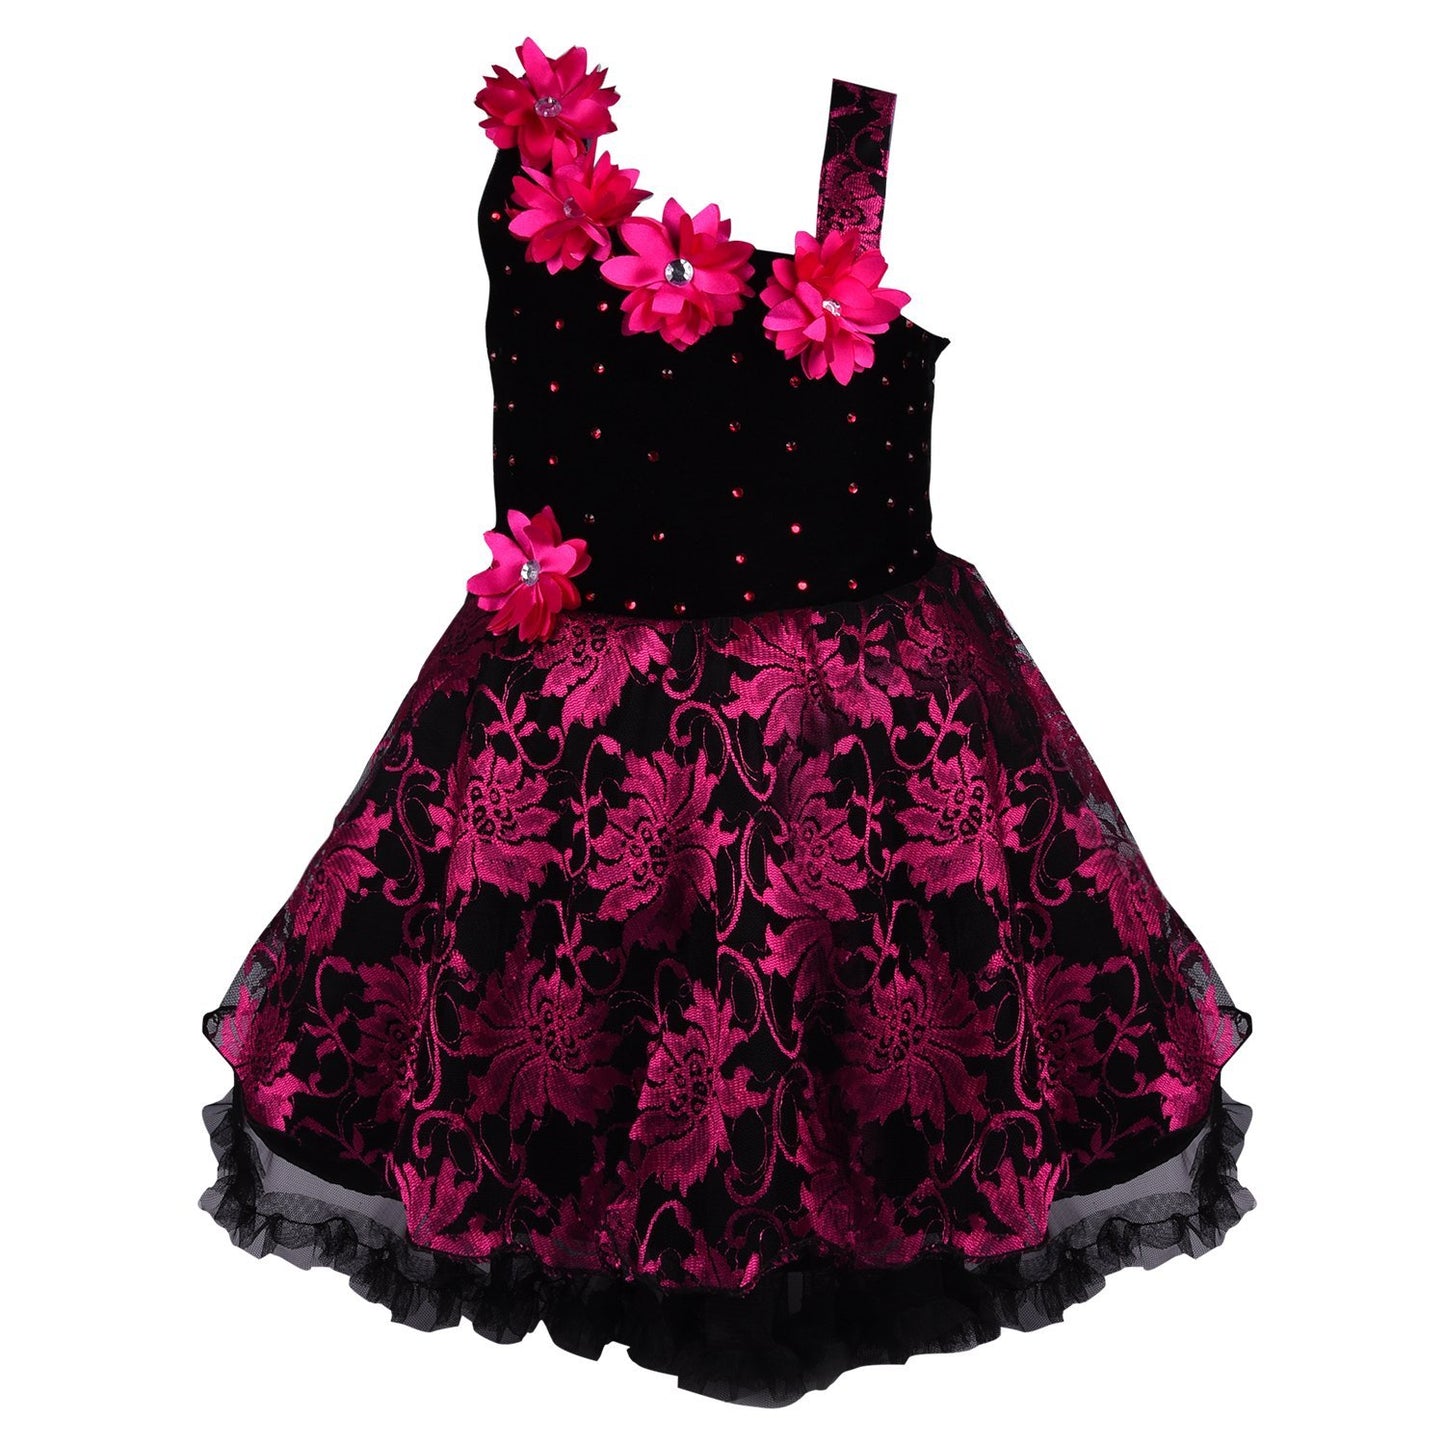 Baby Girls Party Wear Frock Dress DN1102pnk - Wish Karo Party Wear - frocks Party Wear - baby dress